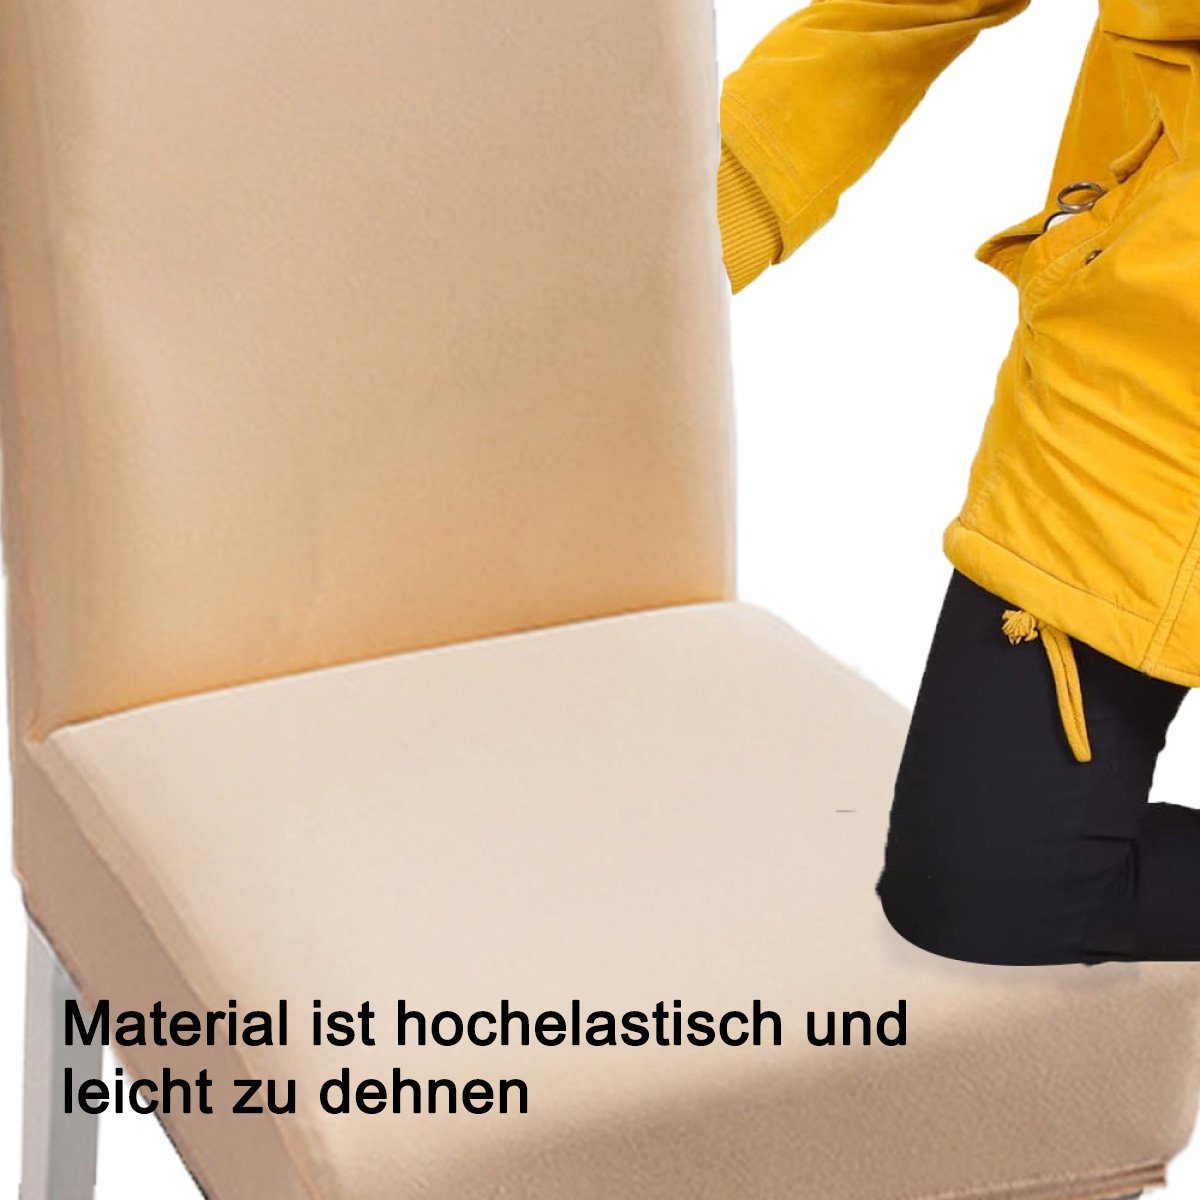 für Stuhlschutzbezüge, Stretch-Stuhlhussen beige Juoungle das abnehmbare Esszimmer, Stuhlhusse